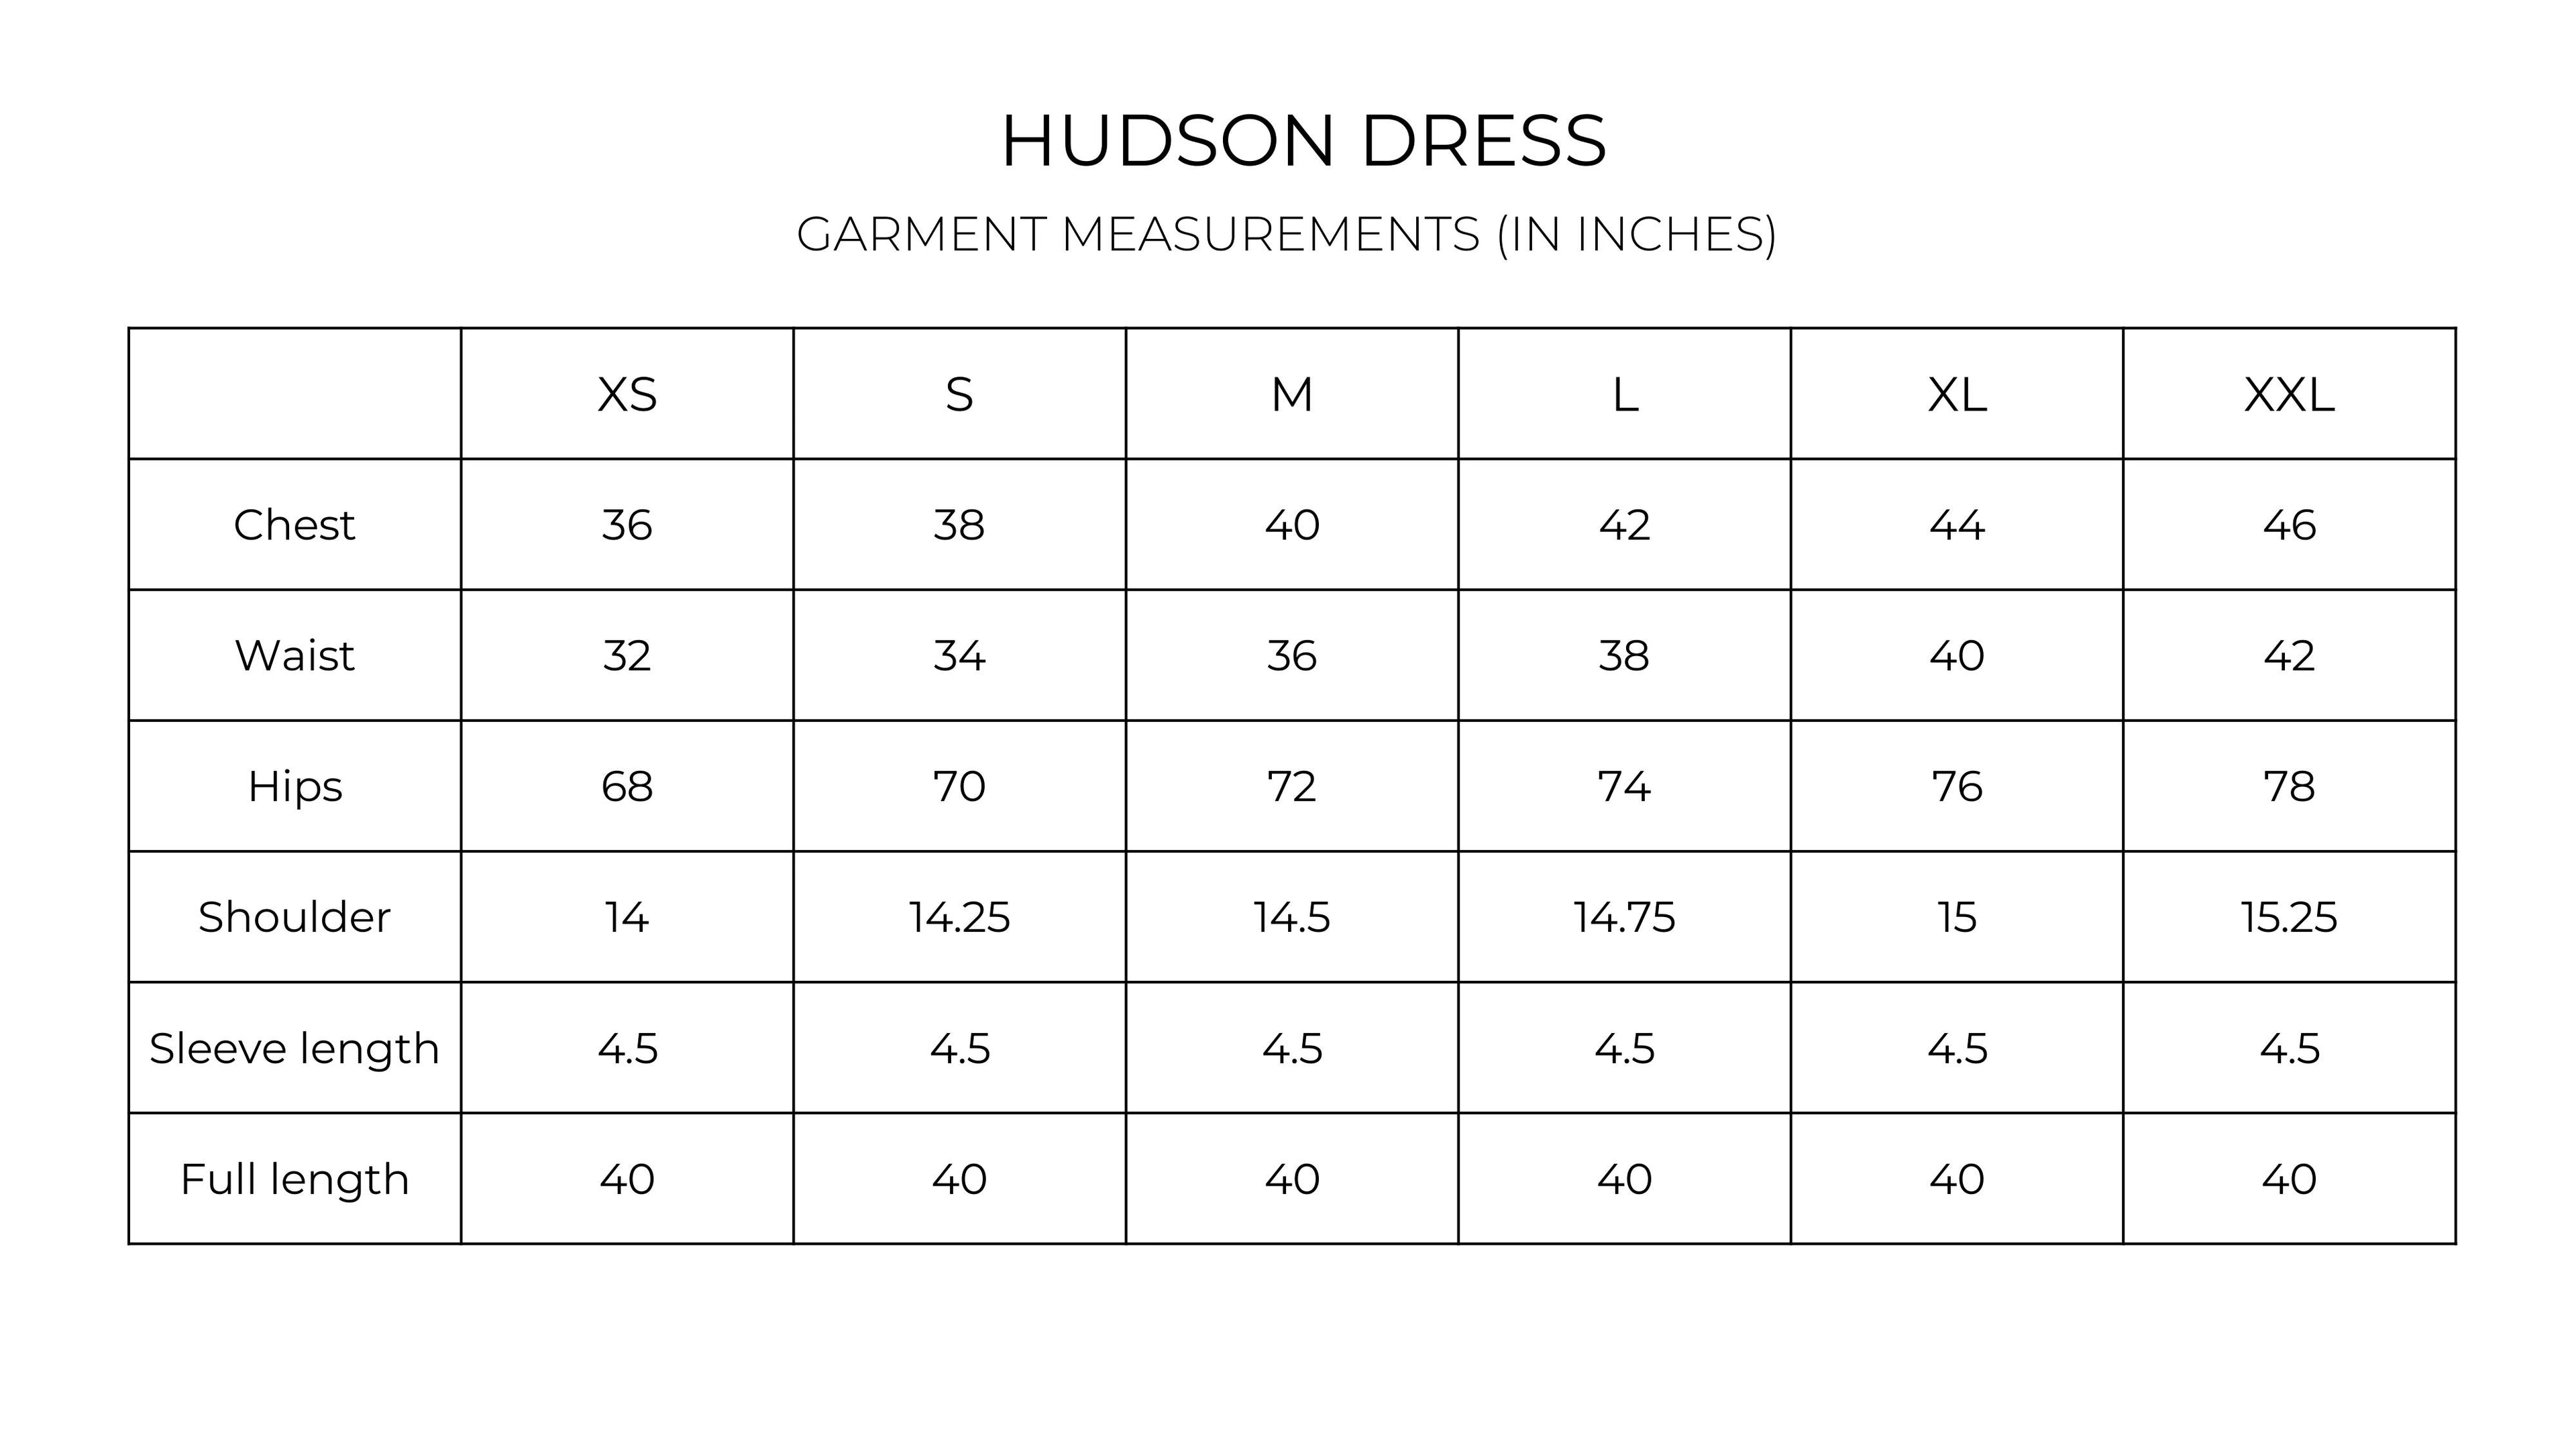 Hudson Dress